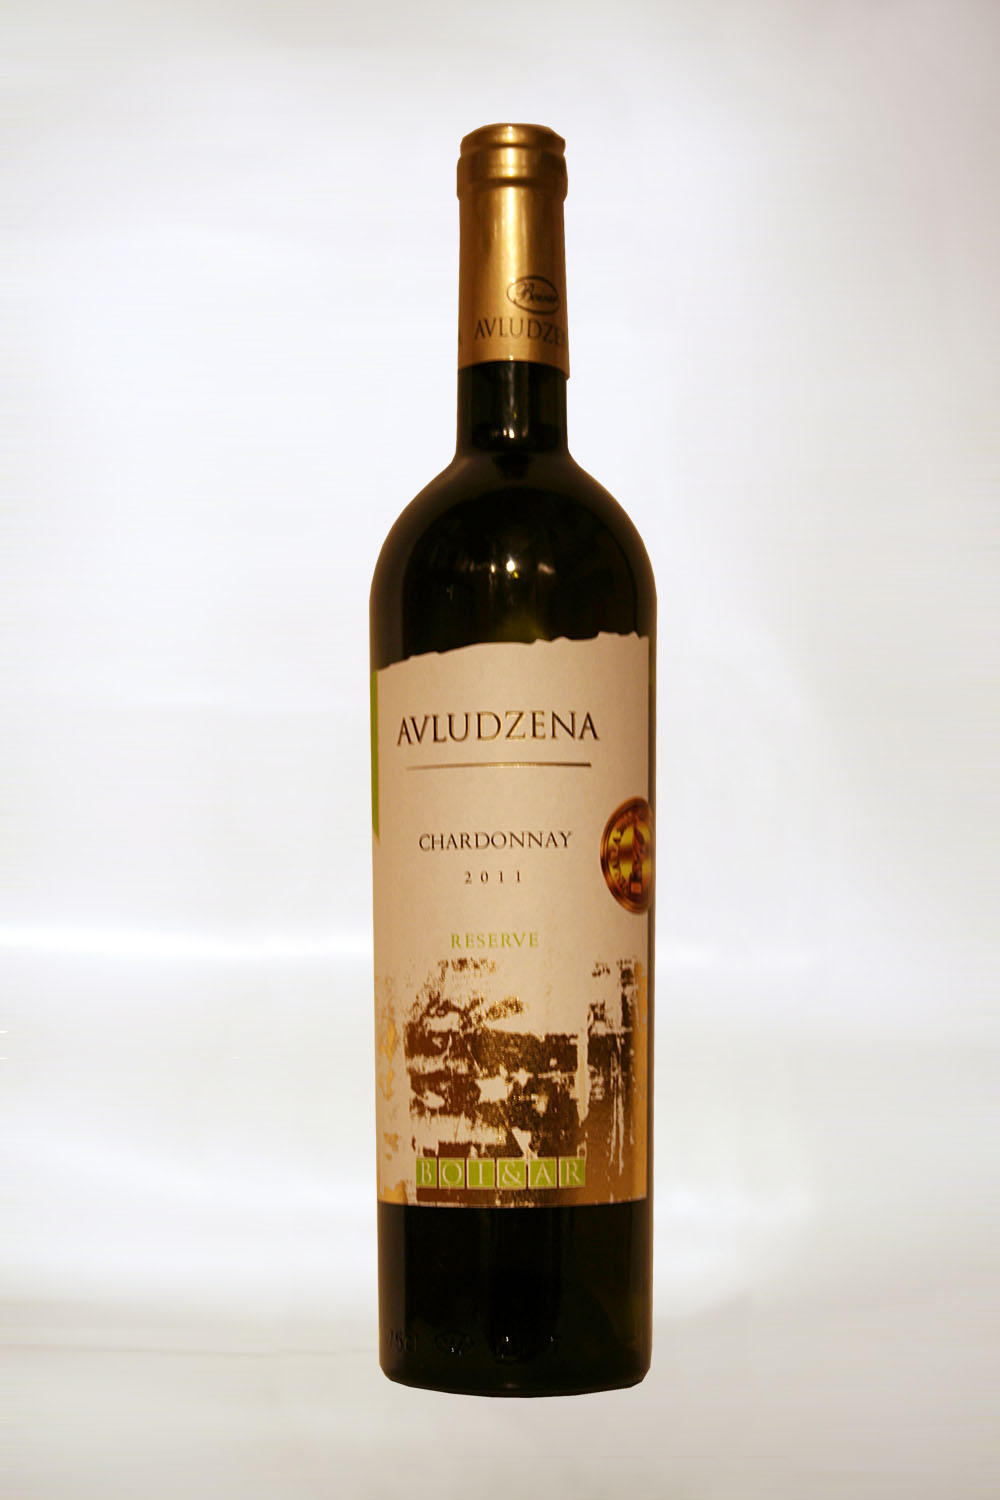 Avludzena Chardonnay Reserve 2011